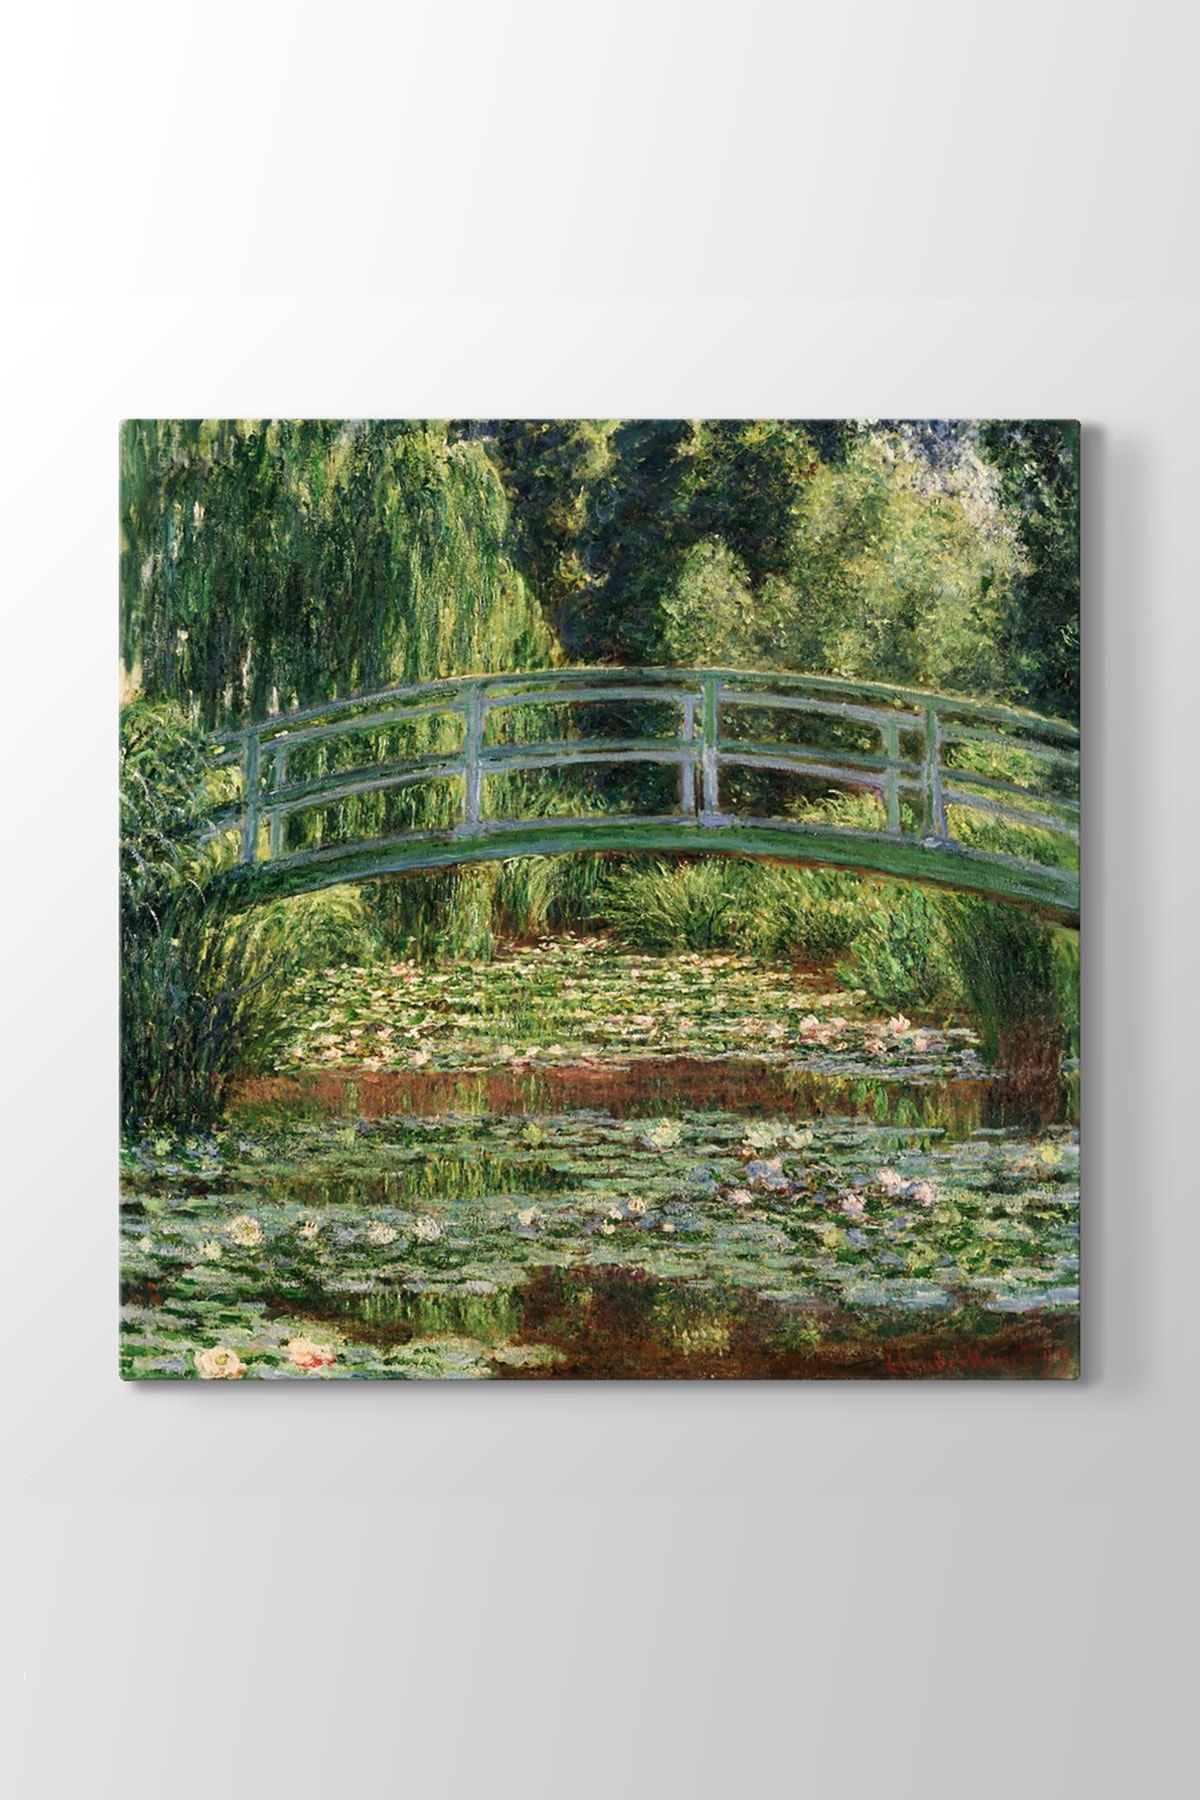 TabloShop Claude Monet - Japanese Footbridge Tablosu (Model 3) - (ÖLÇÜSÜ 100 x 100 cm)